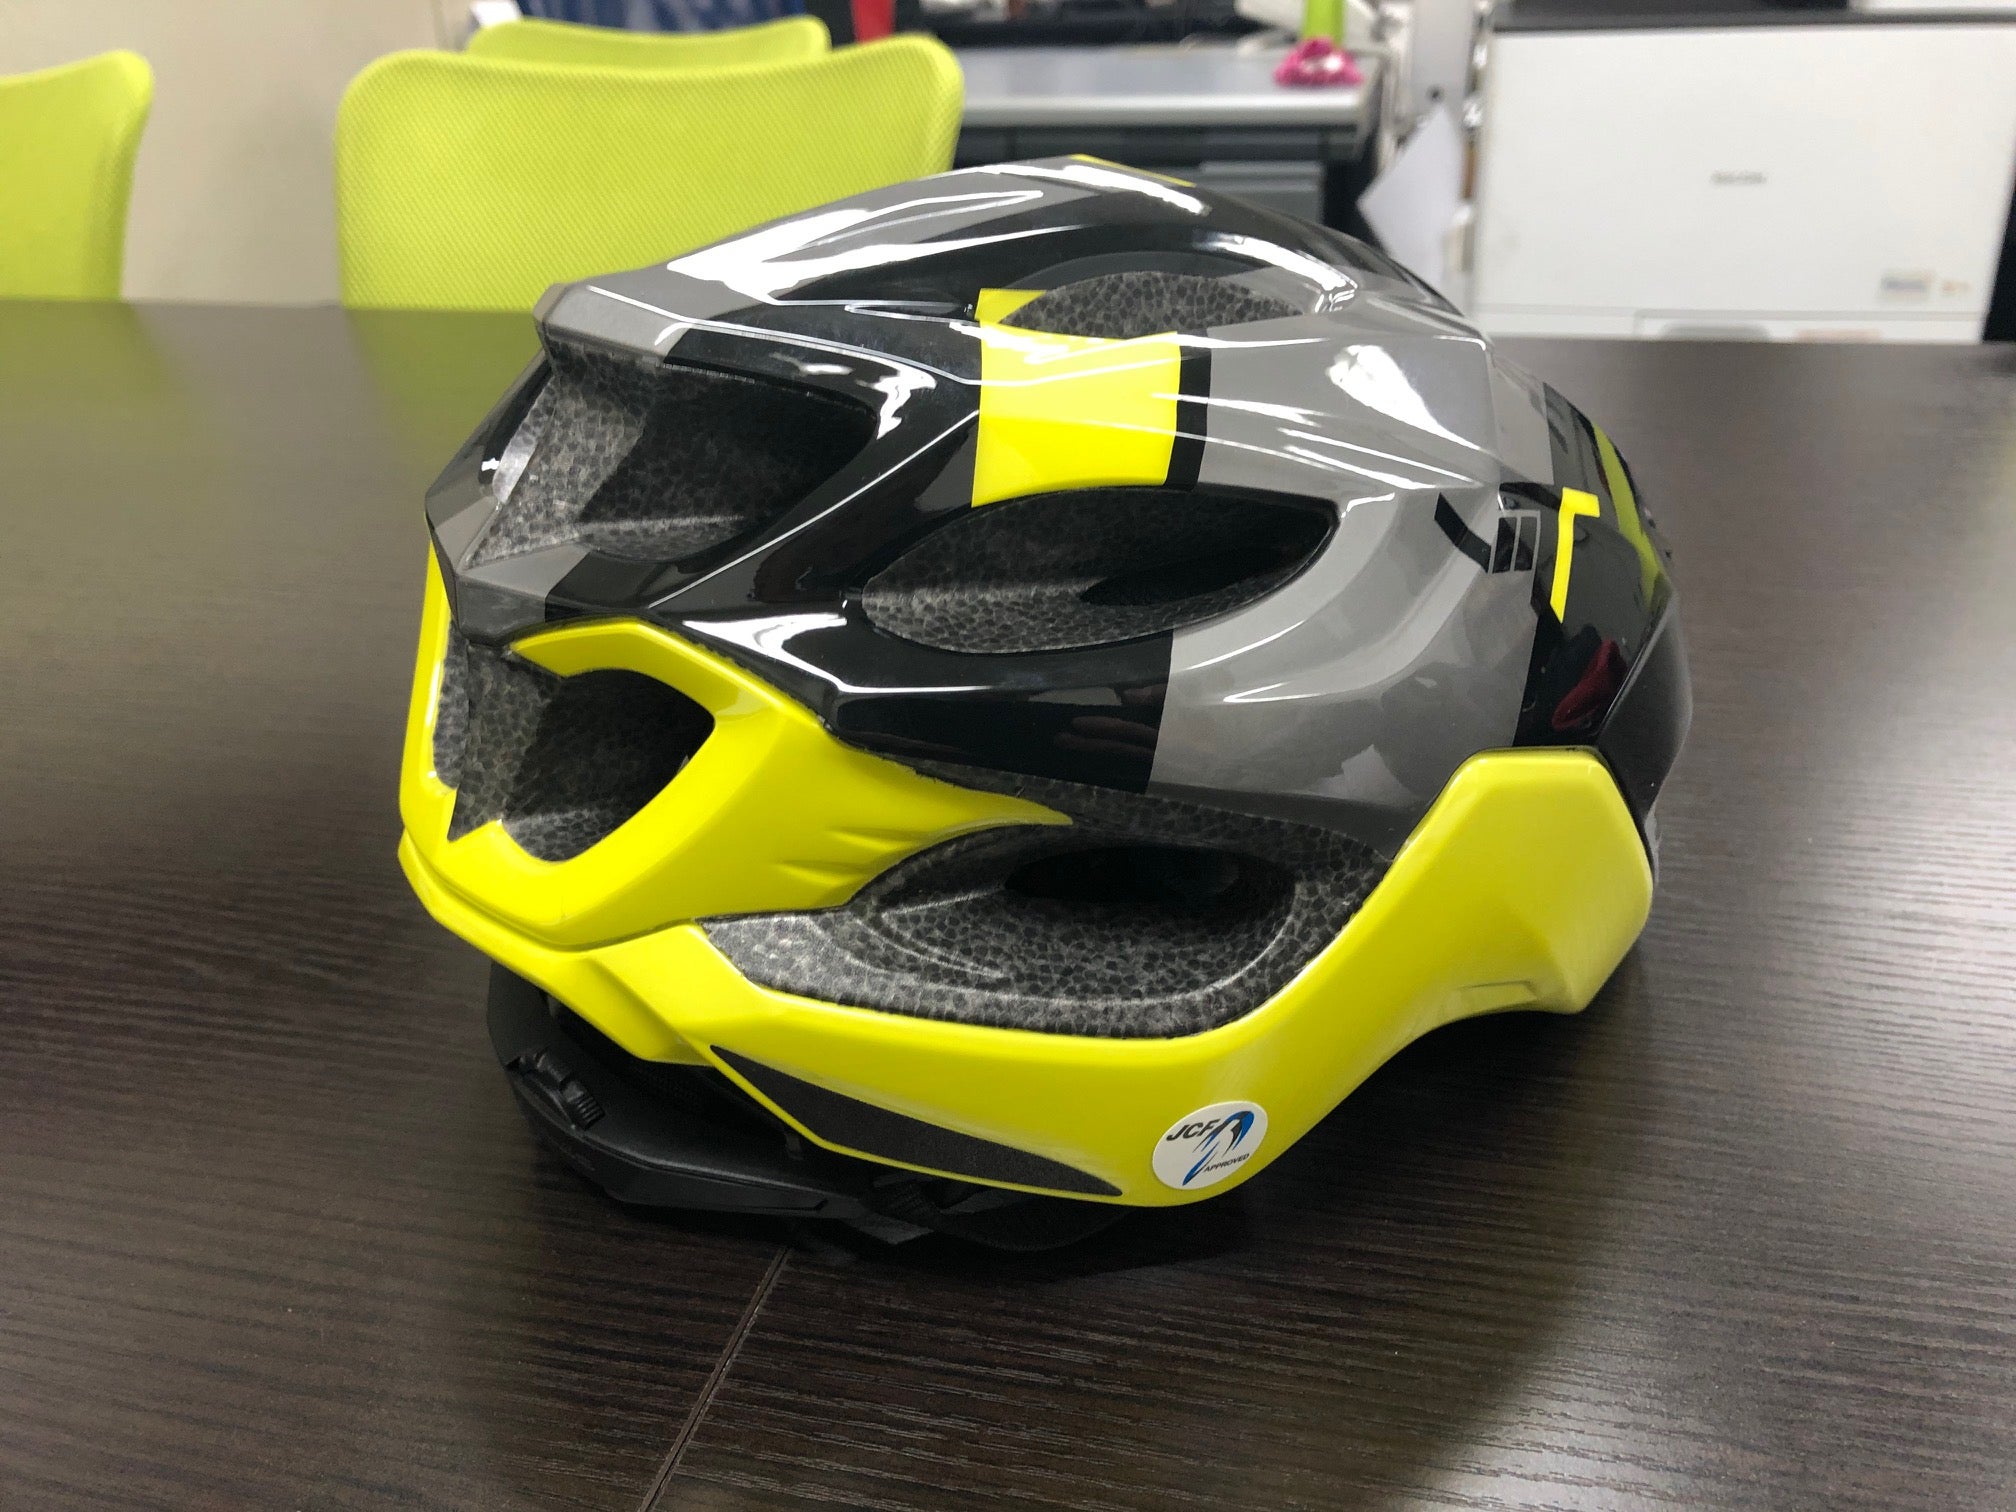 シールド付きヘルメット「OGK KABUTO VITT」を購入しました 